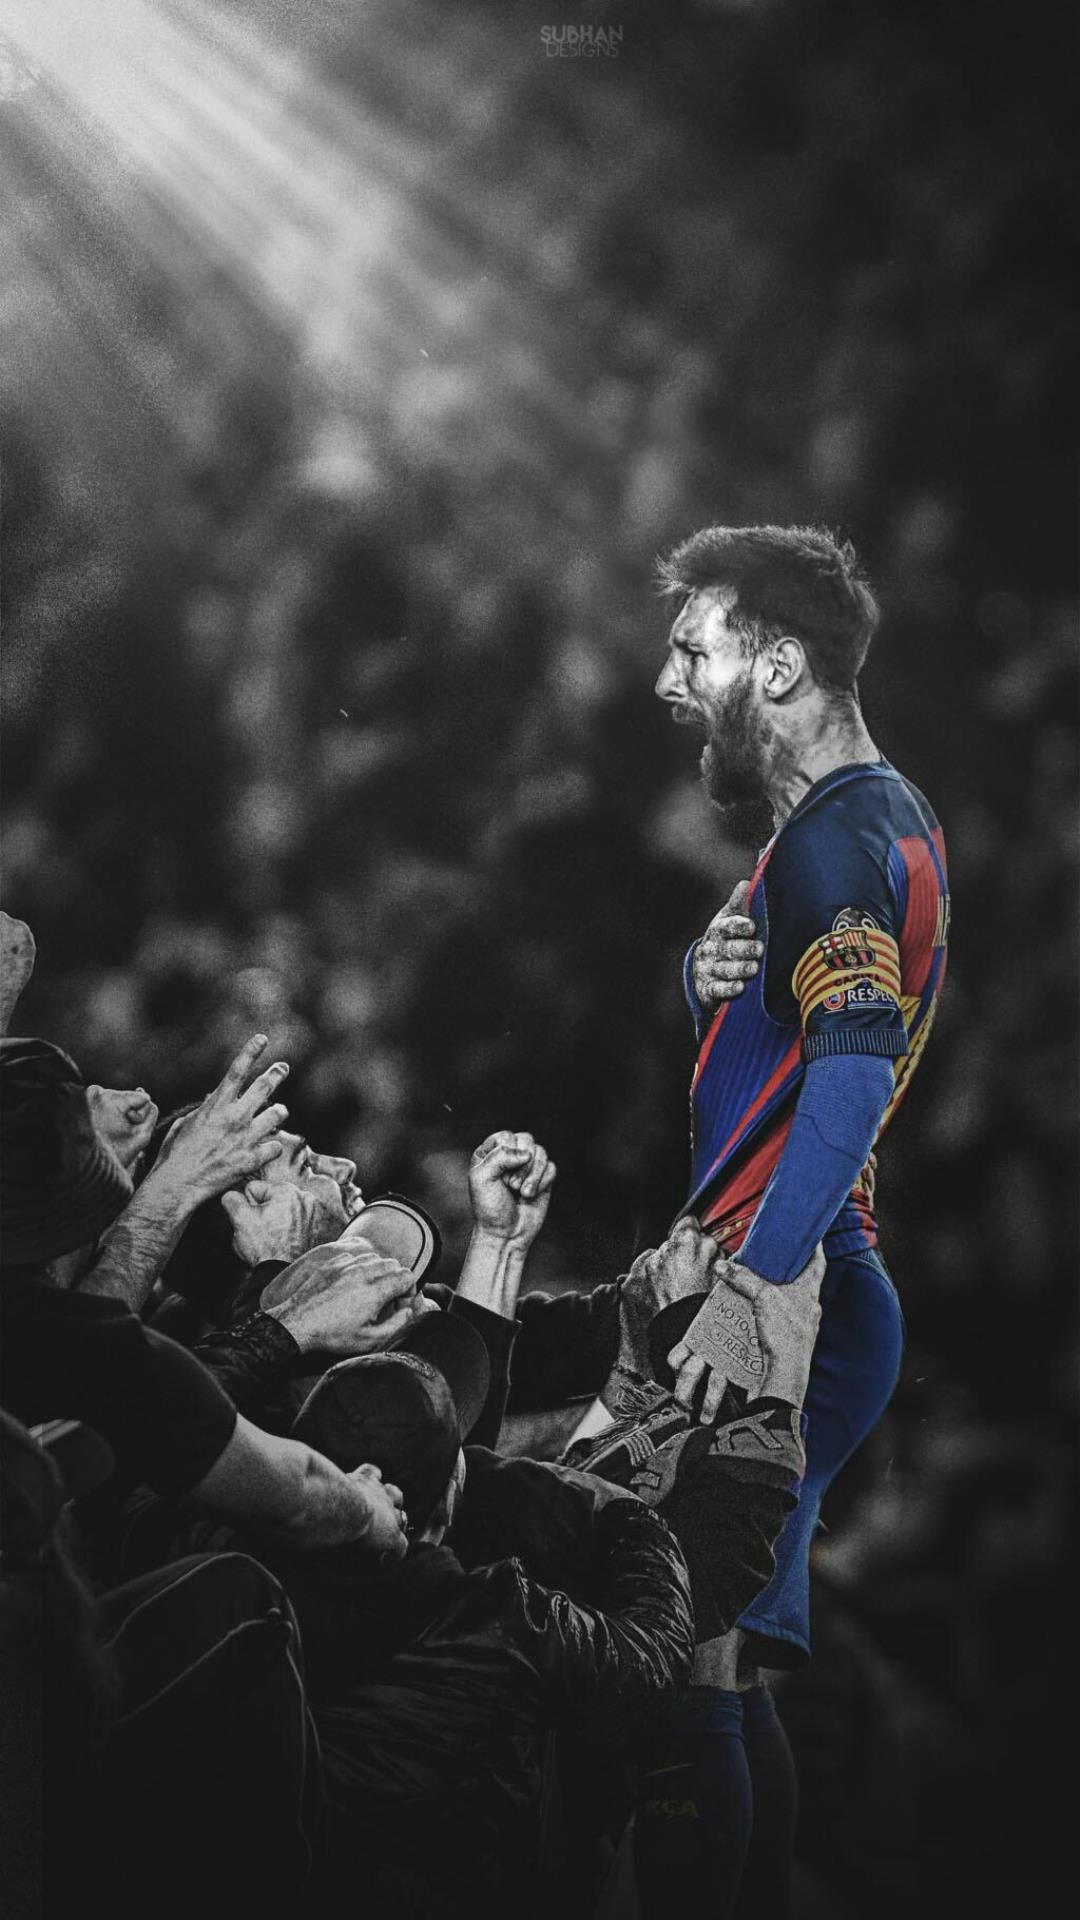 Barcelona là nơi Messi đã bắt đầu sự nghiệp bóng đá của mình. Với bộ sưu tập hình nền điện thoại này, bạn sẽ được chiêm ngưỡng những hình ảnh của Messi và Barcelona khi anh ta còn khoác áo câu lạc bộ này. Nếu bạn là một fan của Messi và Barcelona, tải xuống bộ sưu tập này ngay bây giờ để trang trí điện thoại của mình.